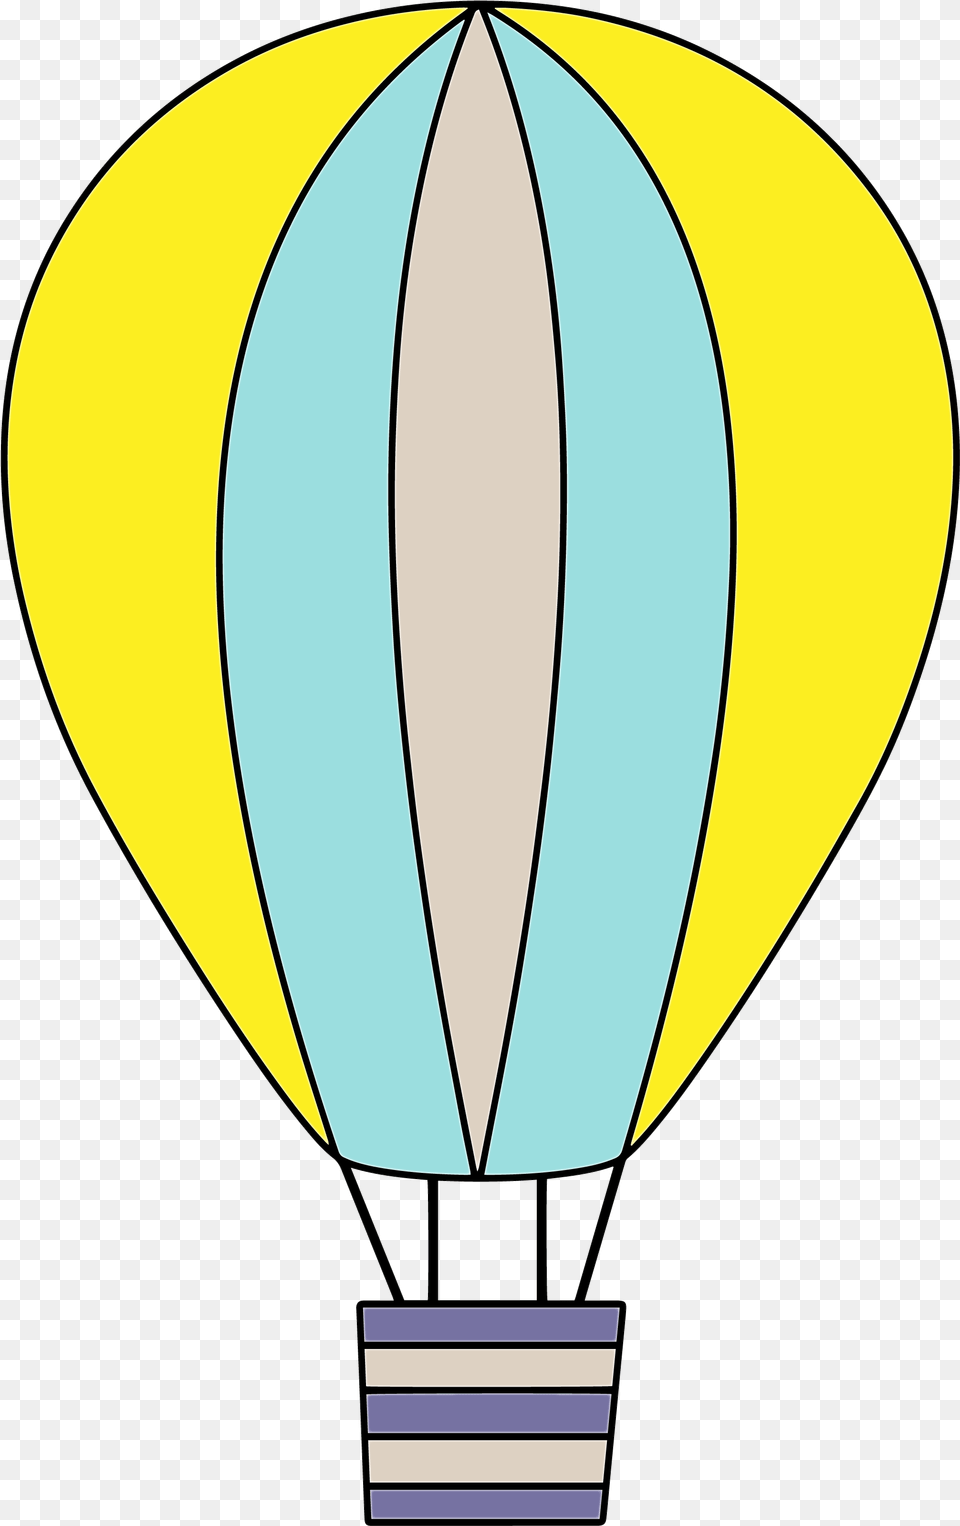 Hot Air Balloon, Aircraft, Transportation, Vehicle, Hot Air Balloon Free Transparent Png